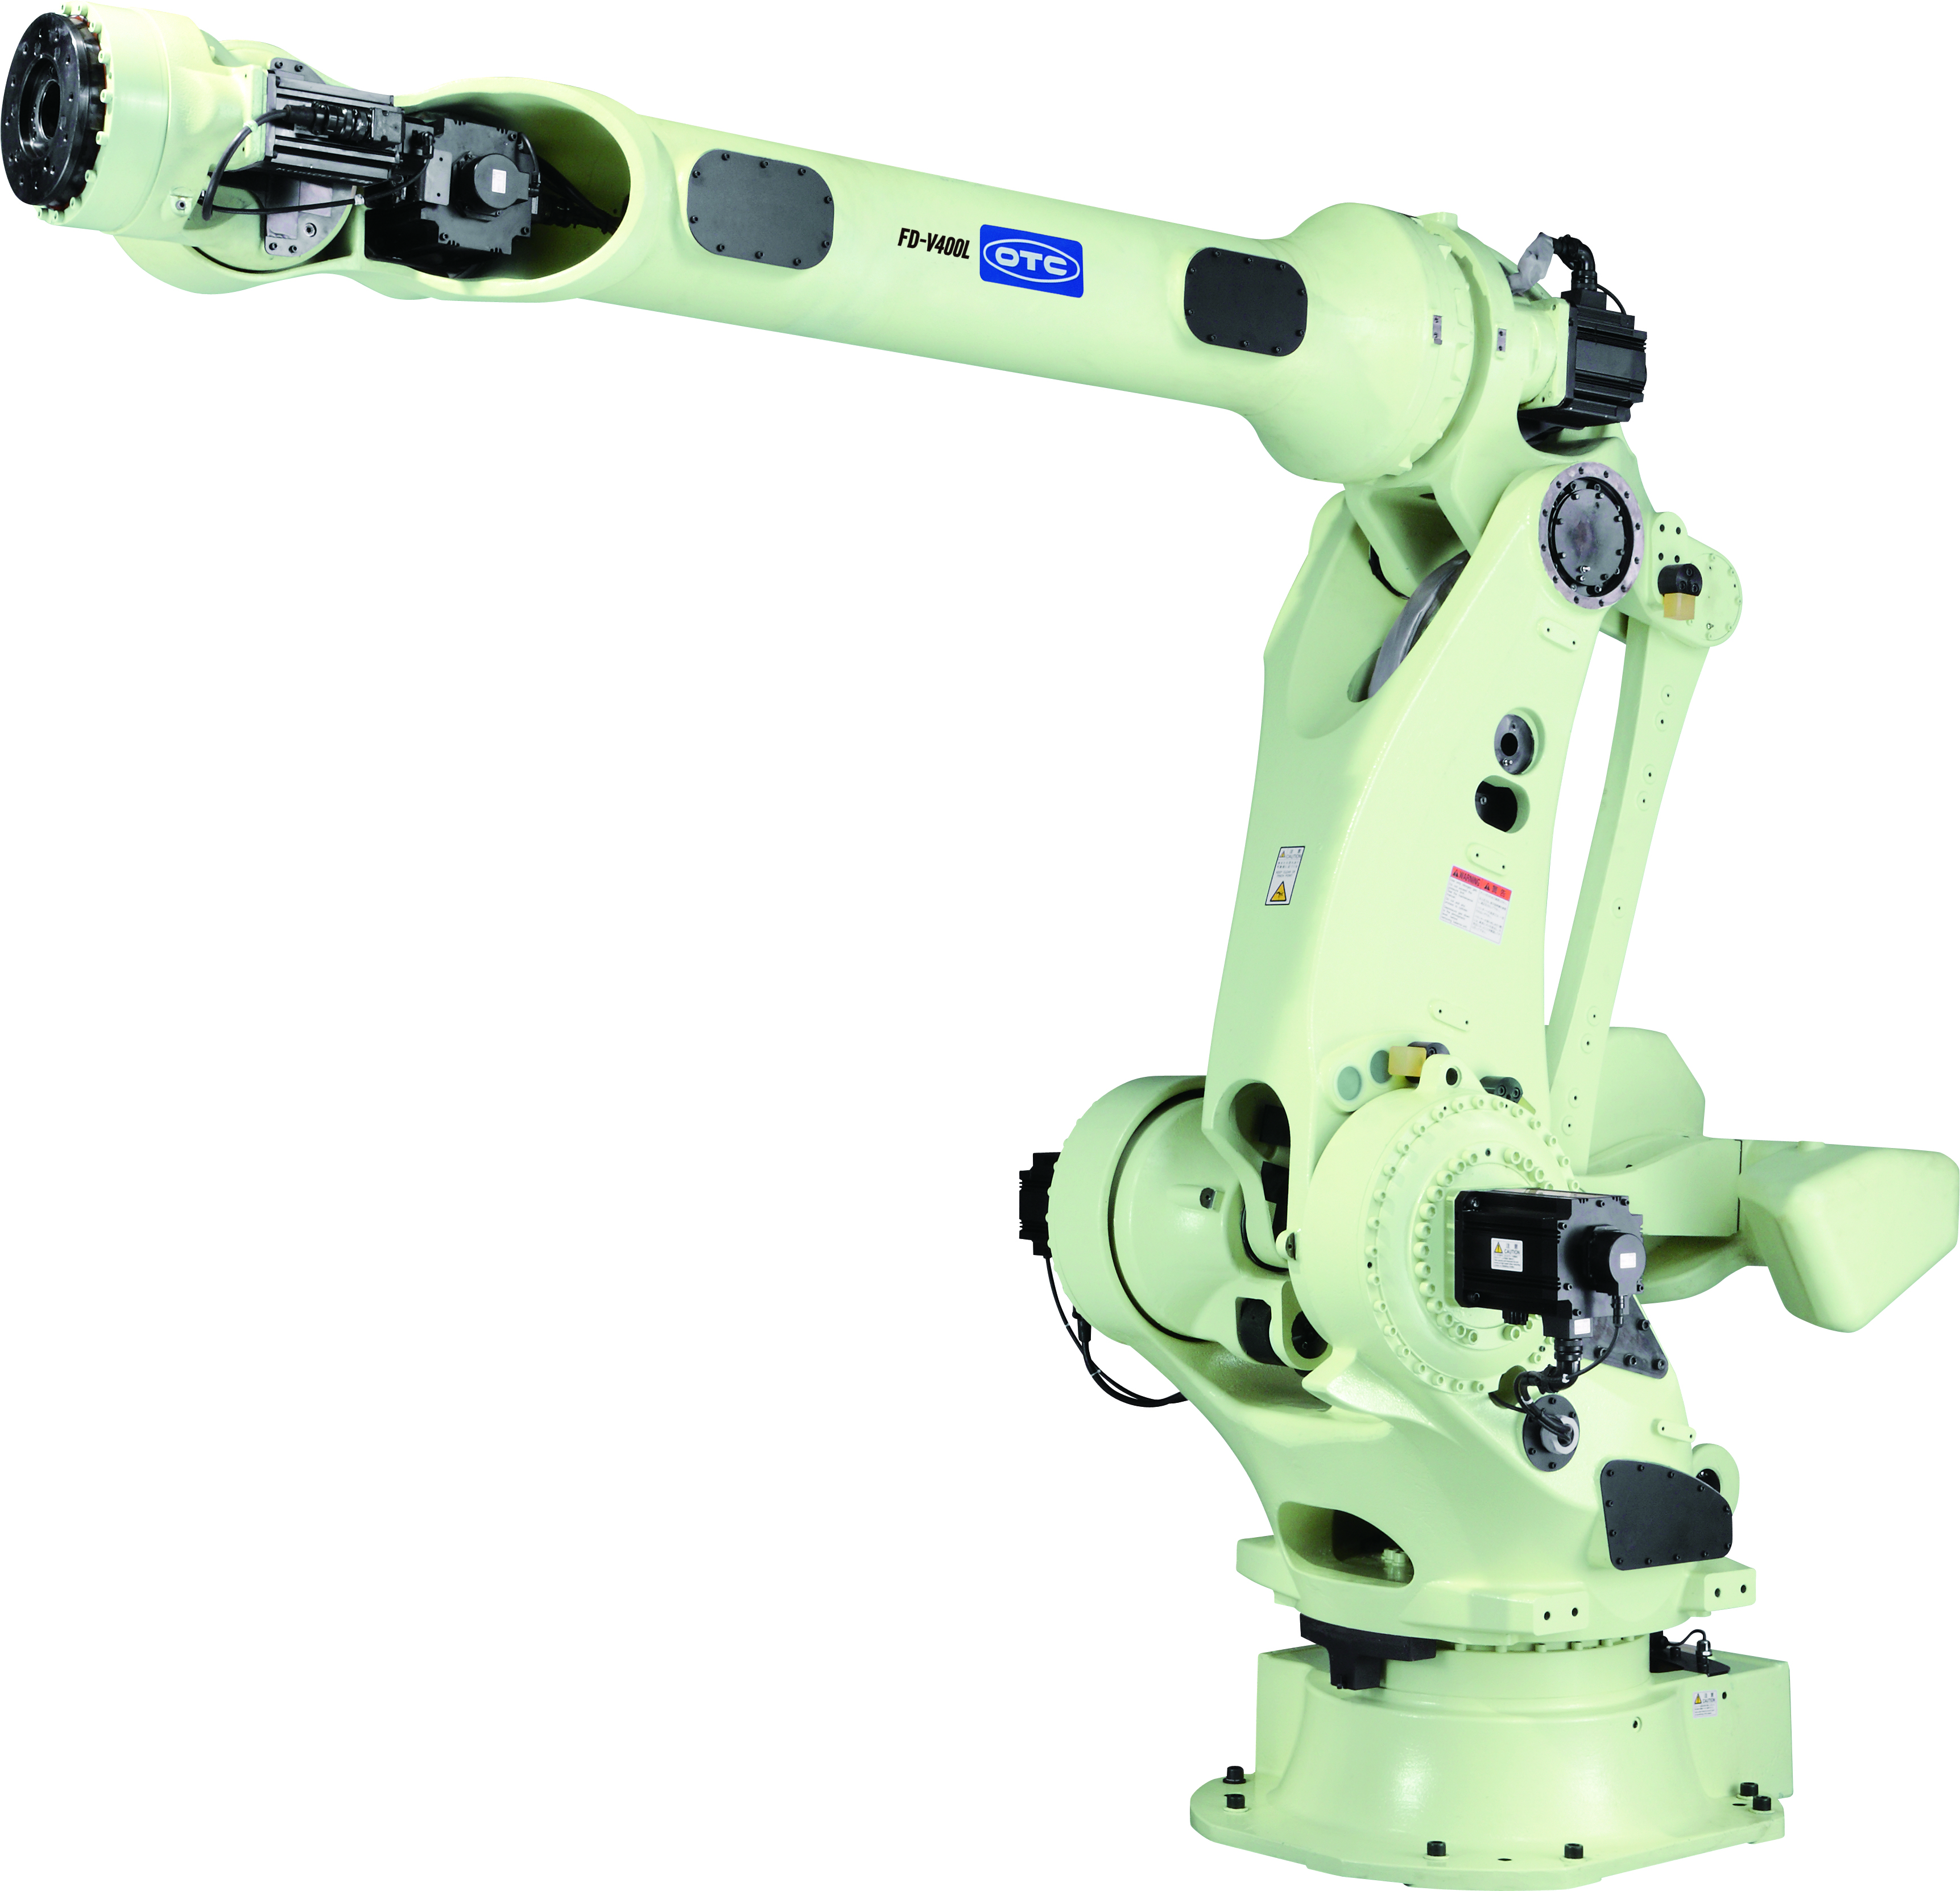 焊接机器人 智能工业用机器人FD-V280L/FD-V350/FD-V400L/FD-V600/FD-V700日本OTC